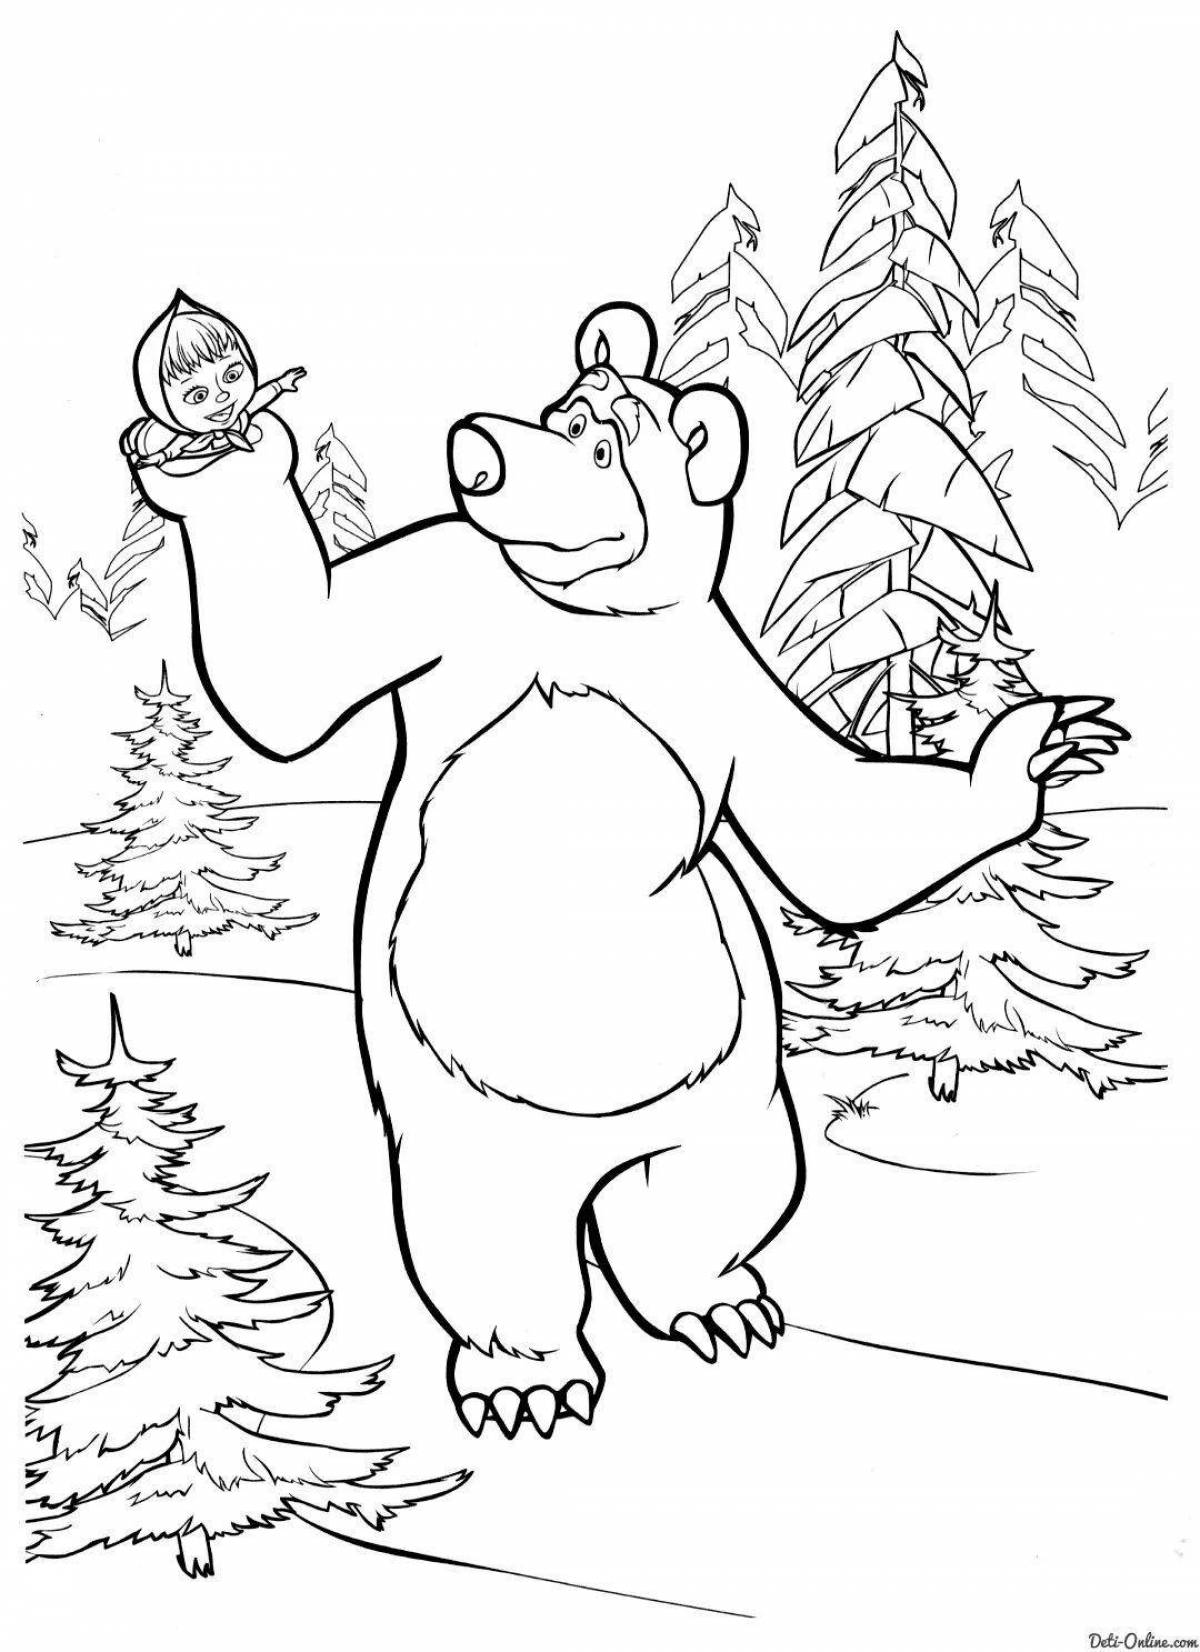 Раскраска дружелюбный медведь из маши и медведя